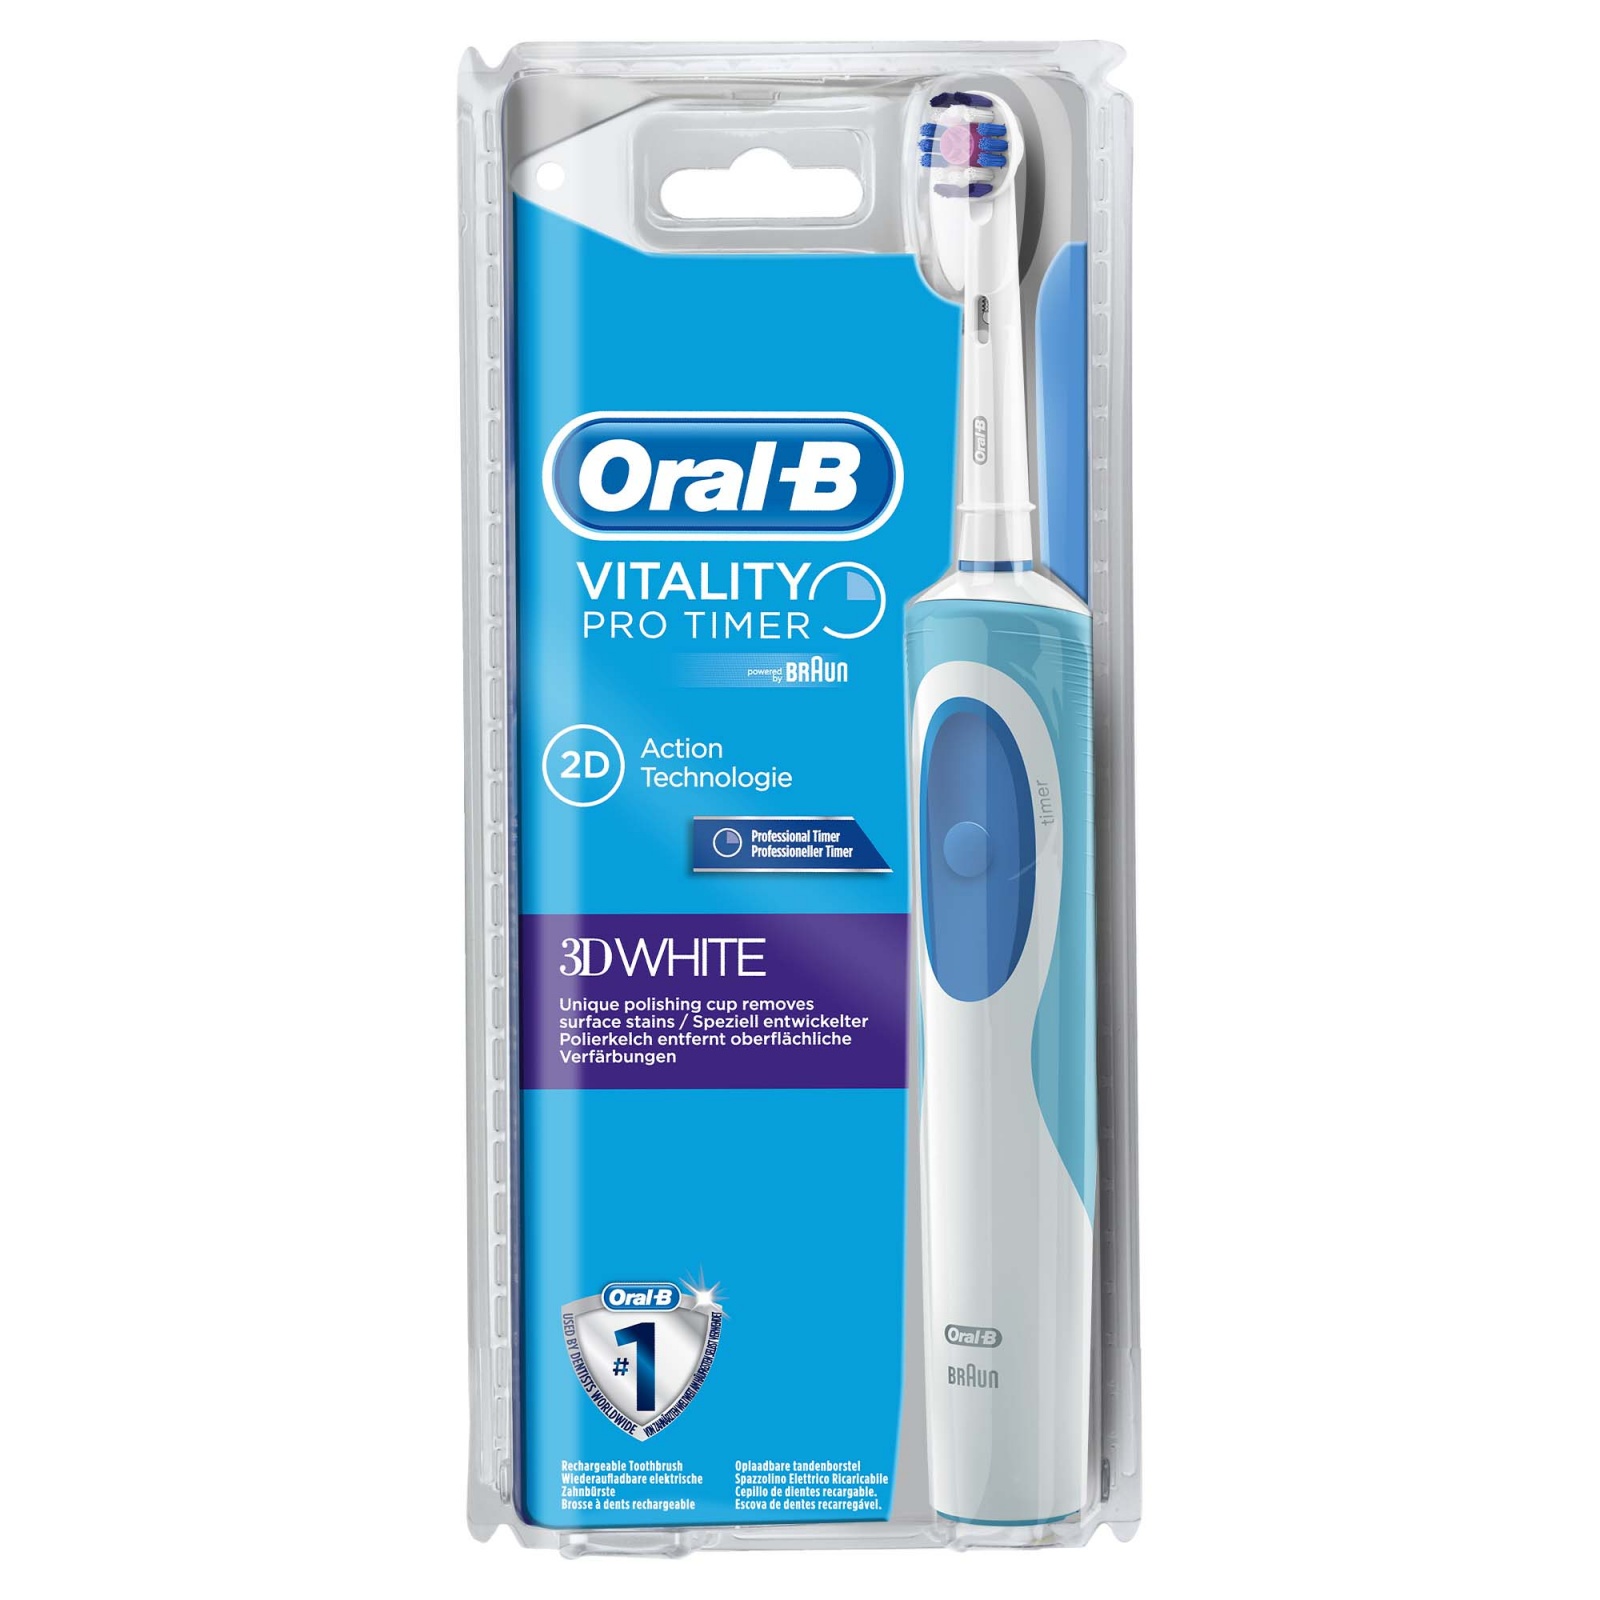 oral b 3d white цена зубная щетка